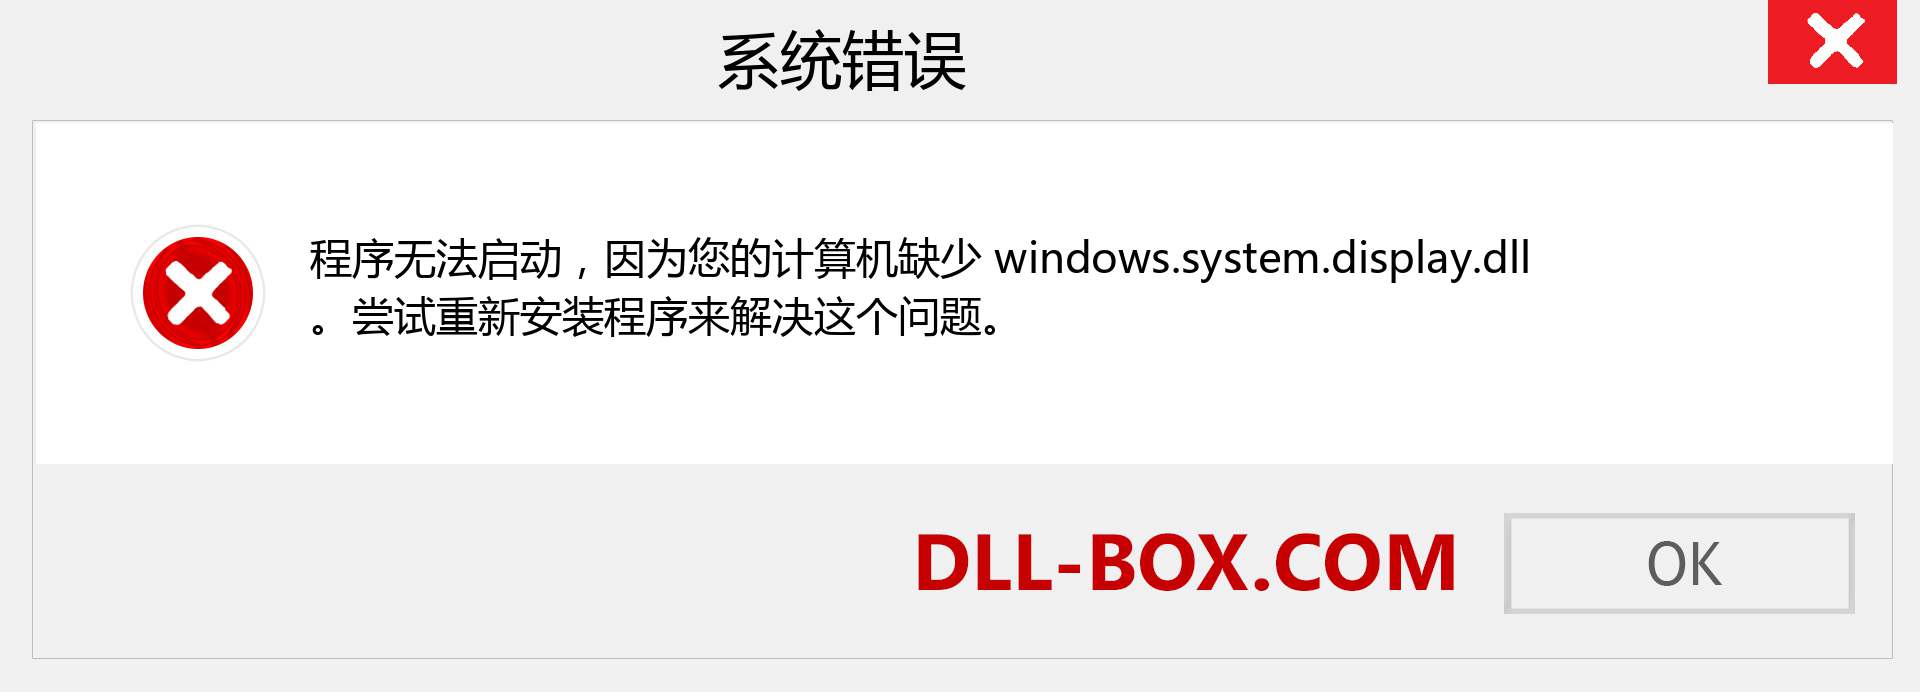 windows.system.display.dll 文件丢失？。 适用于 Windows 7、8、10 的下载 - 修复 Windows、照片、图像上的 windows.system.display dll 丢失错误